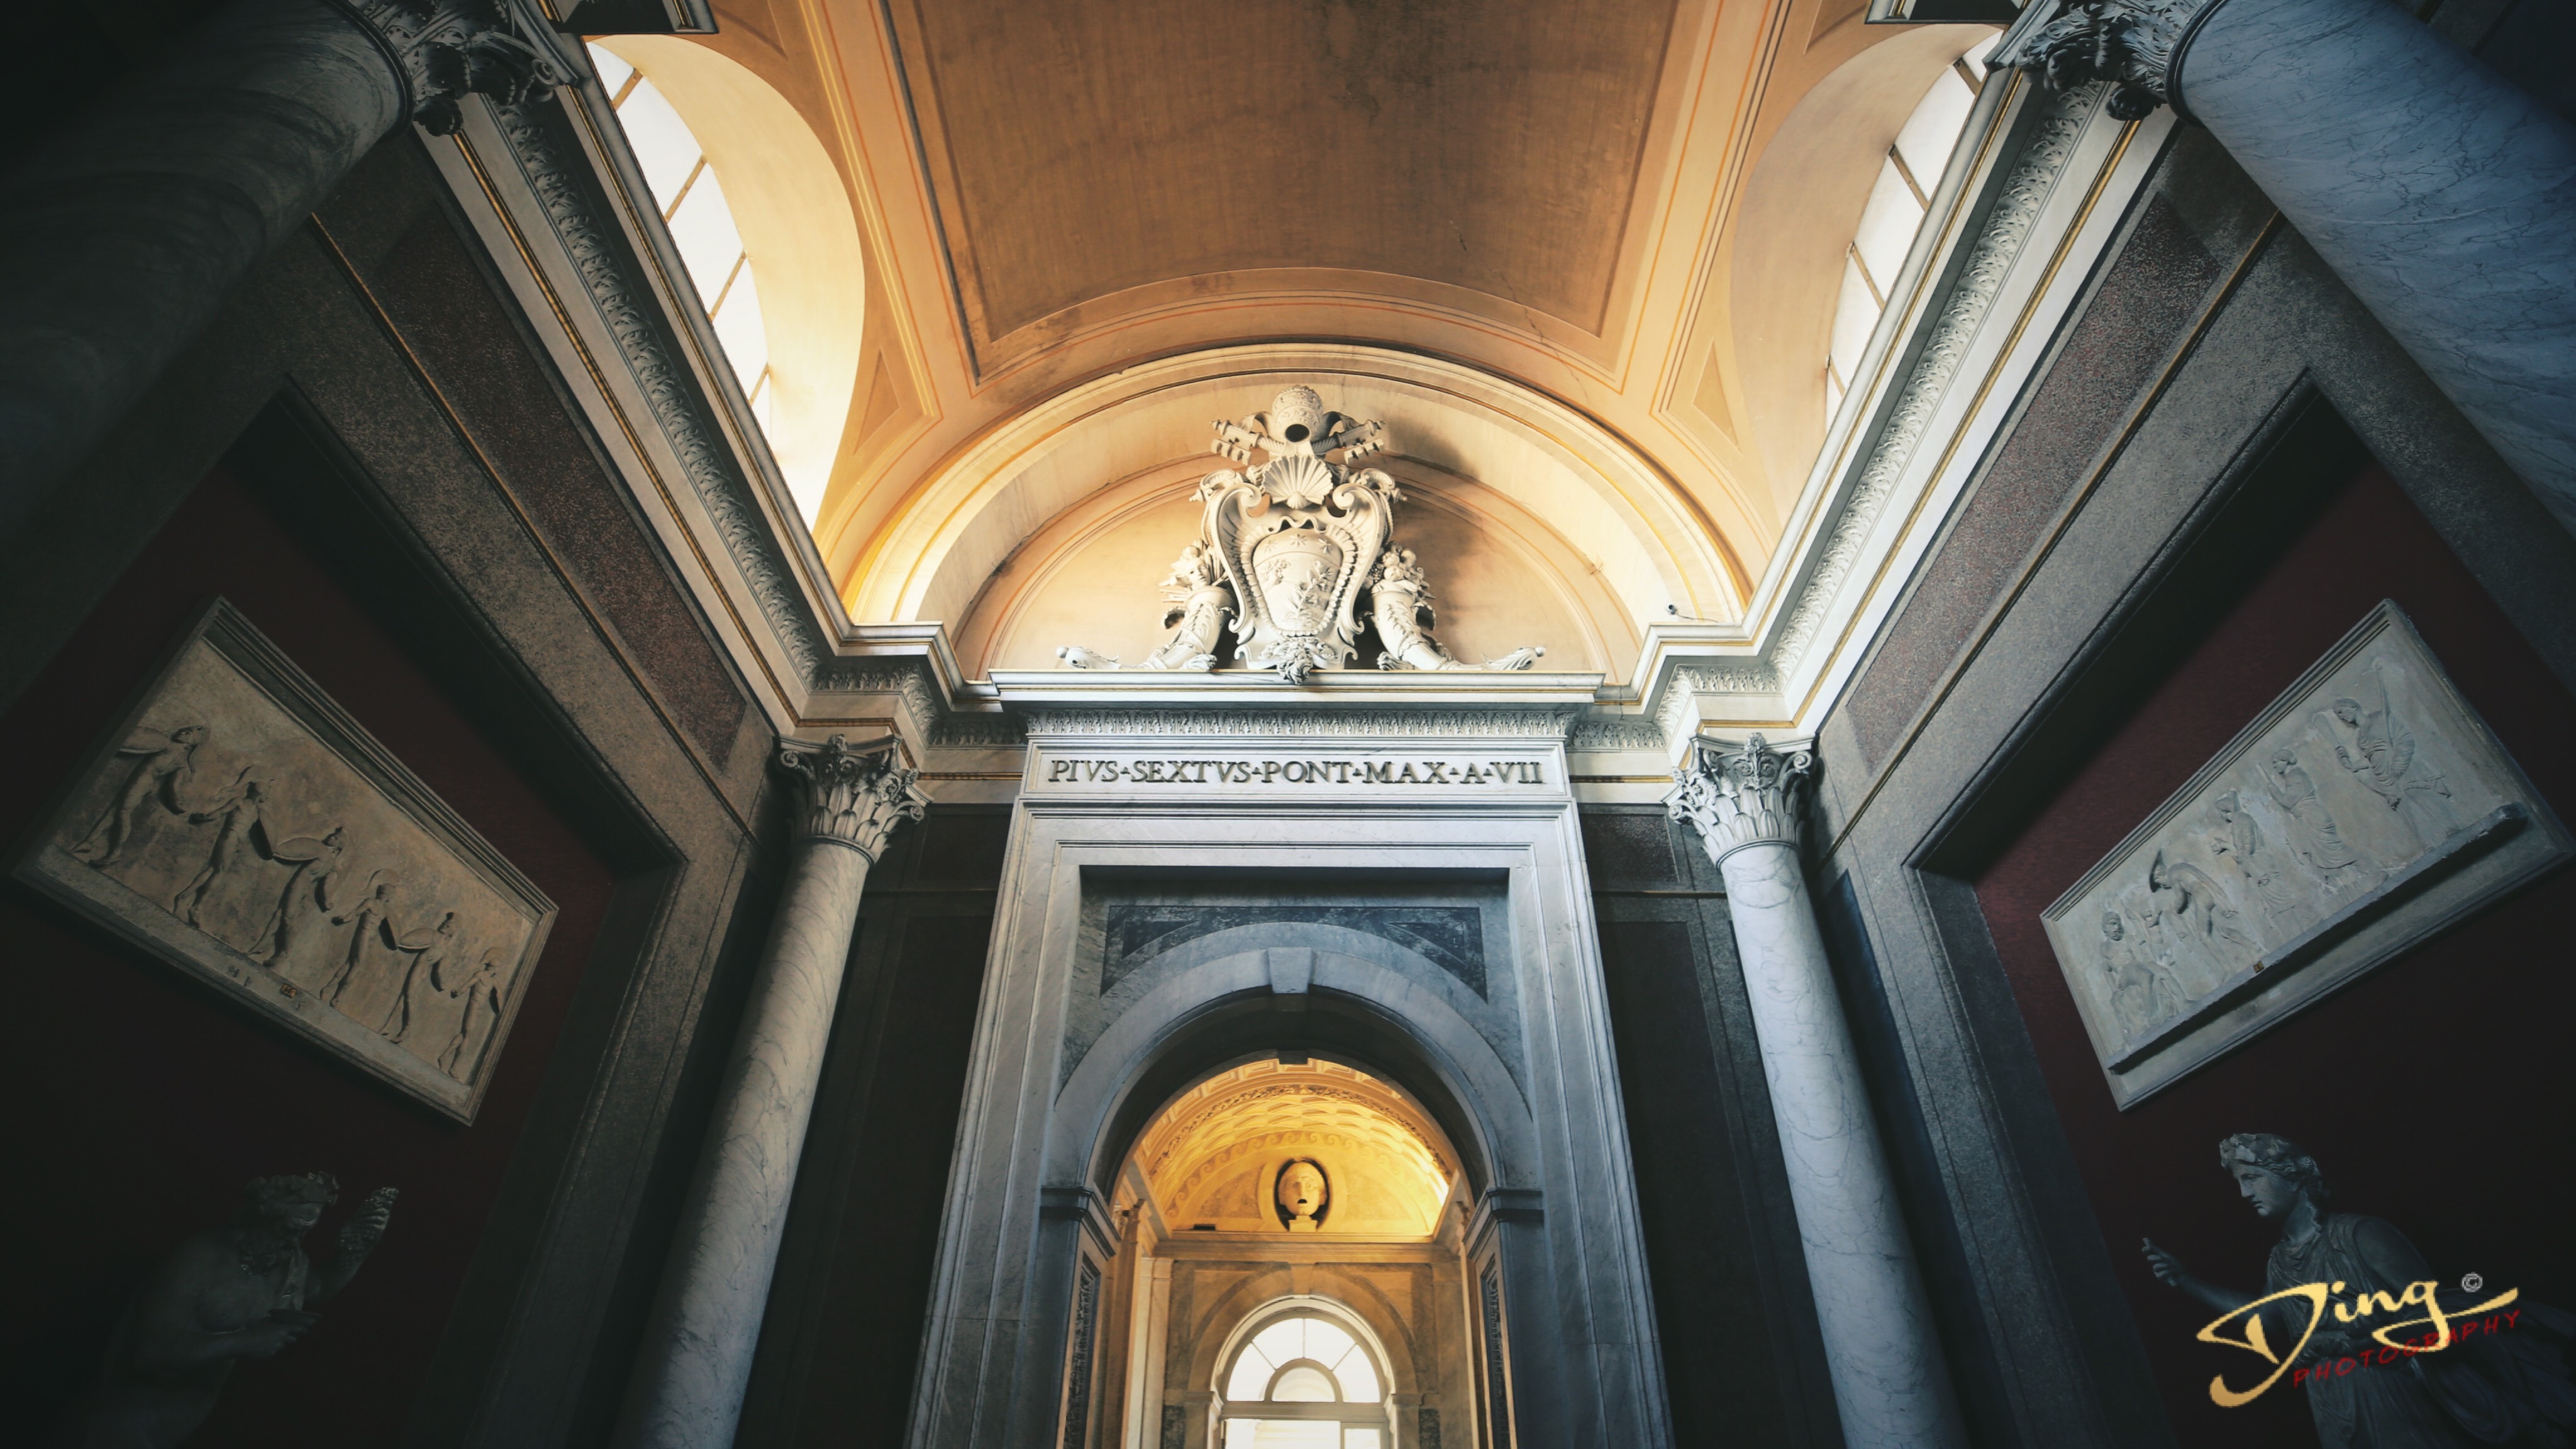 原创一座会生长的博物馆从古至今梵蒂冈有世上无与伦比的艺术珍品